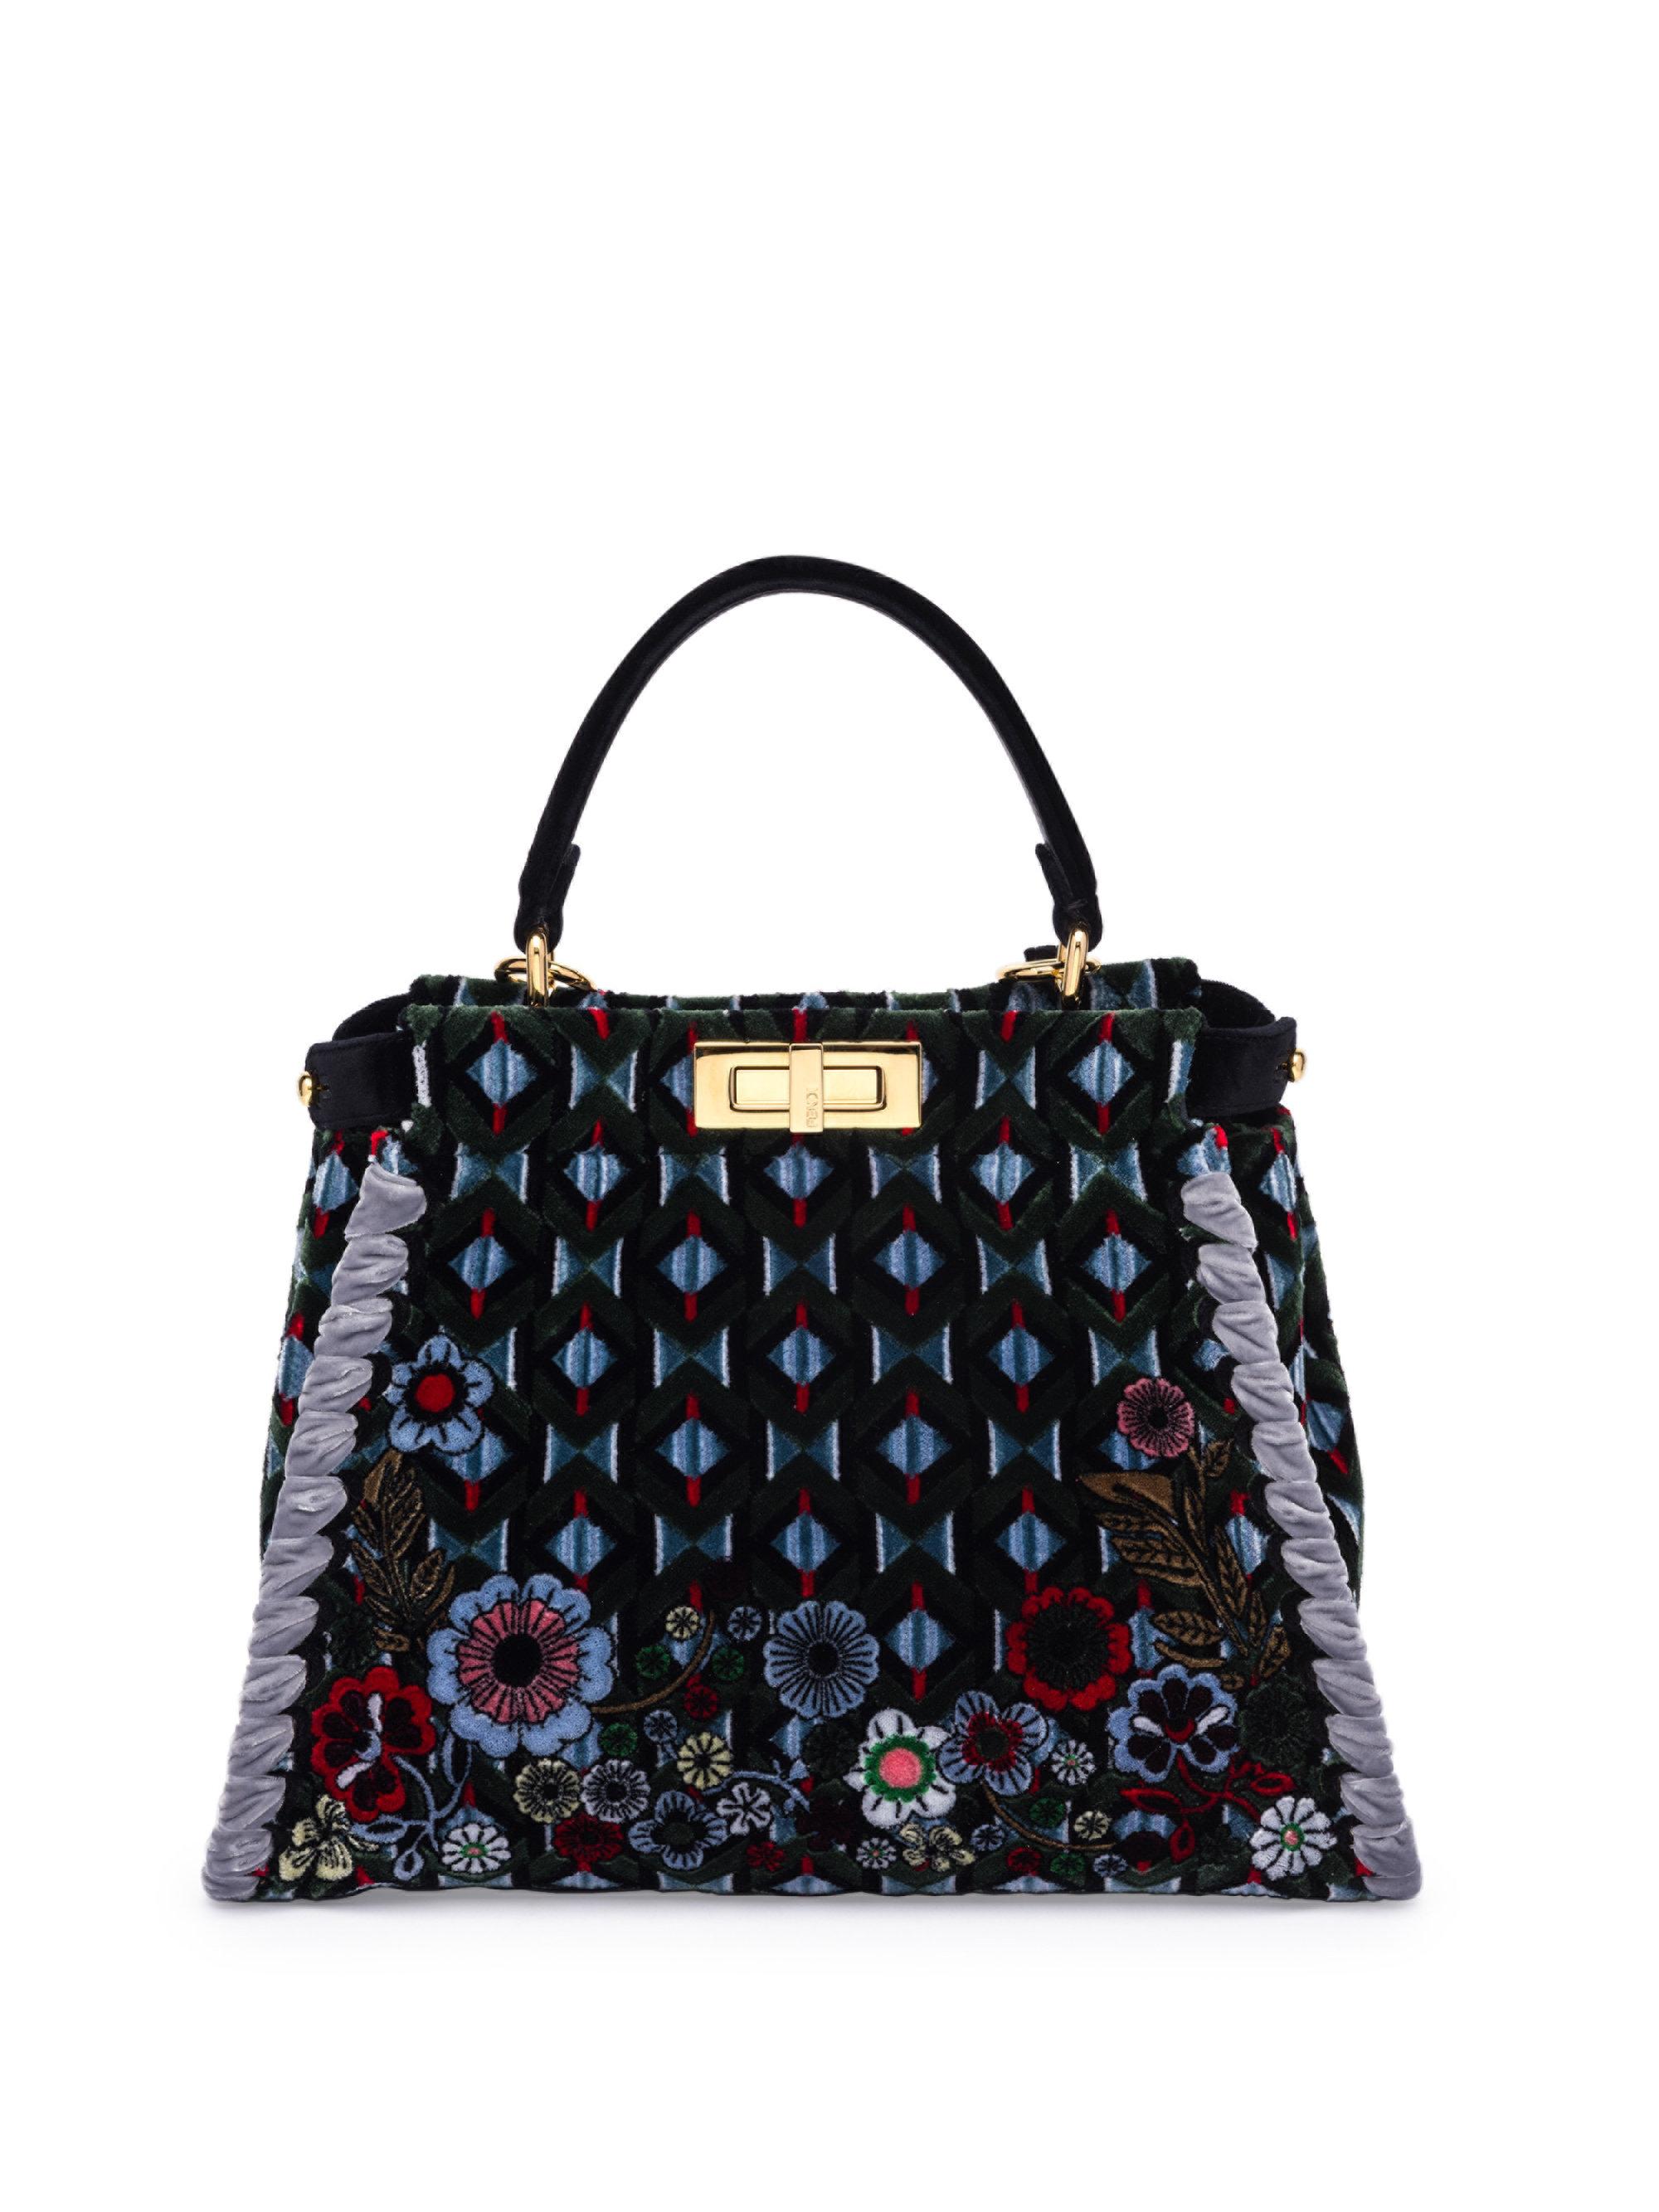 Lyst - Fendi Peekaboo Woven Embroidered Velvet Handbag